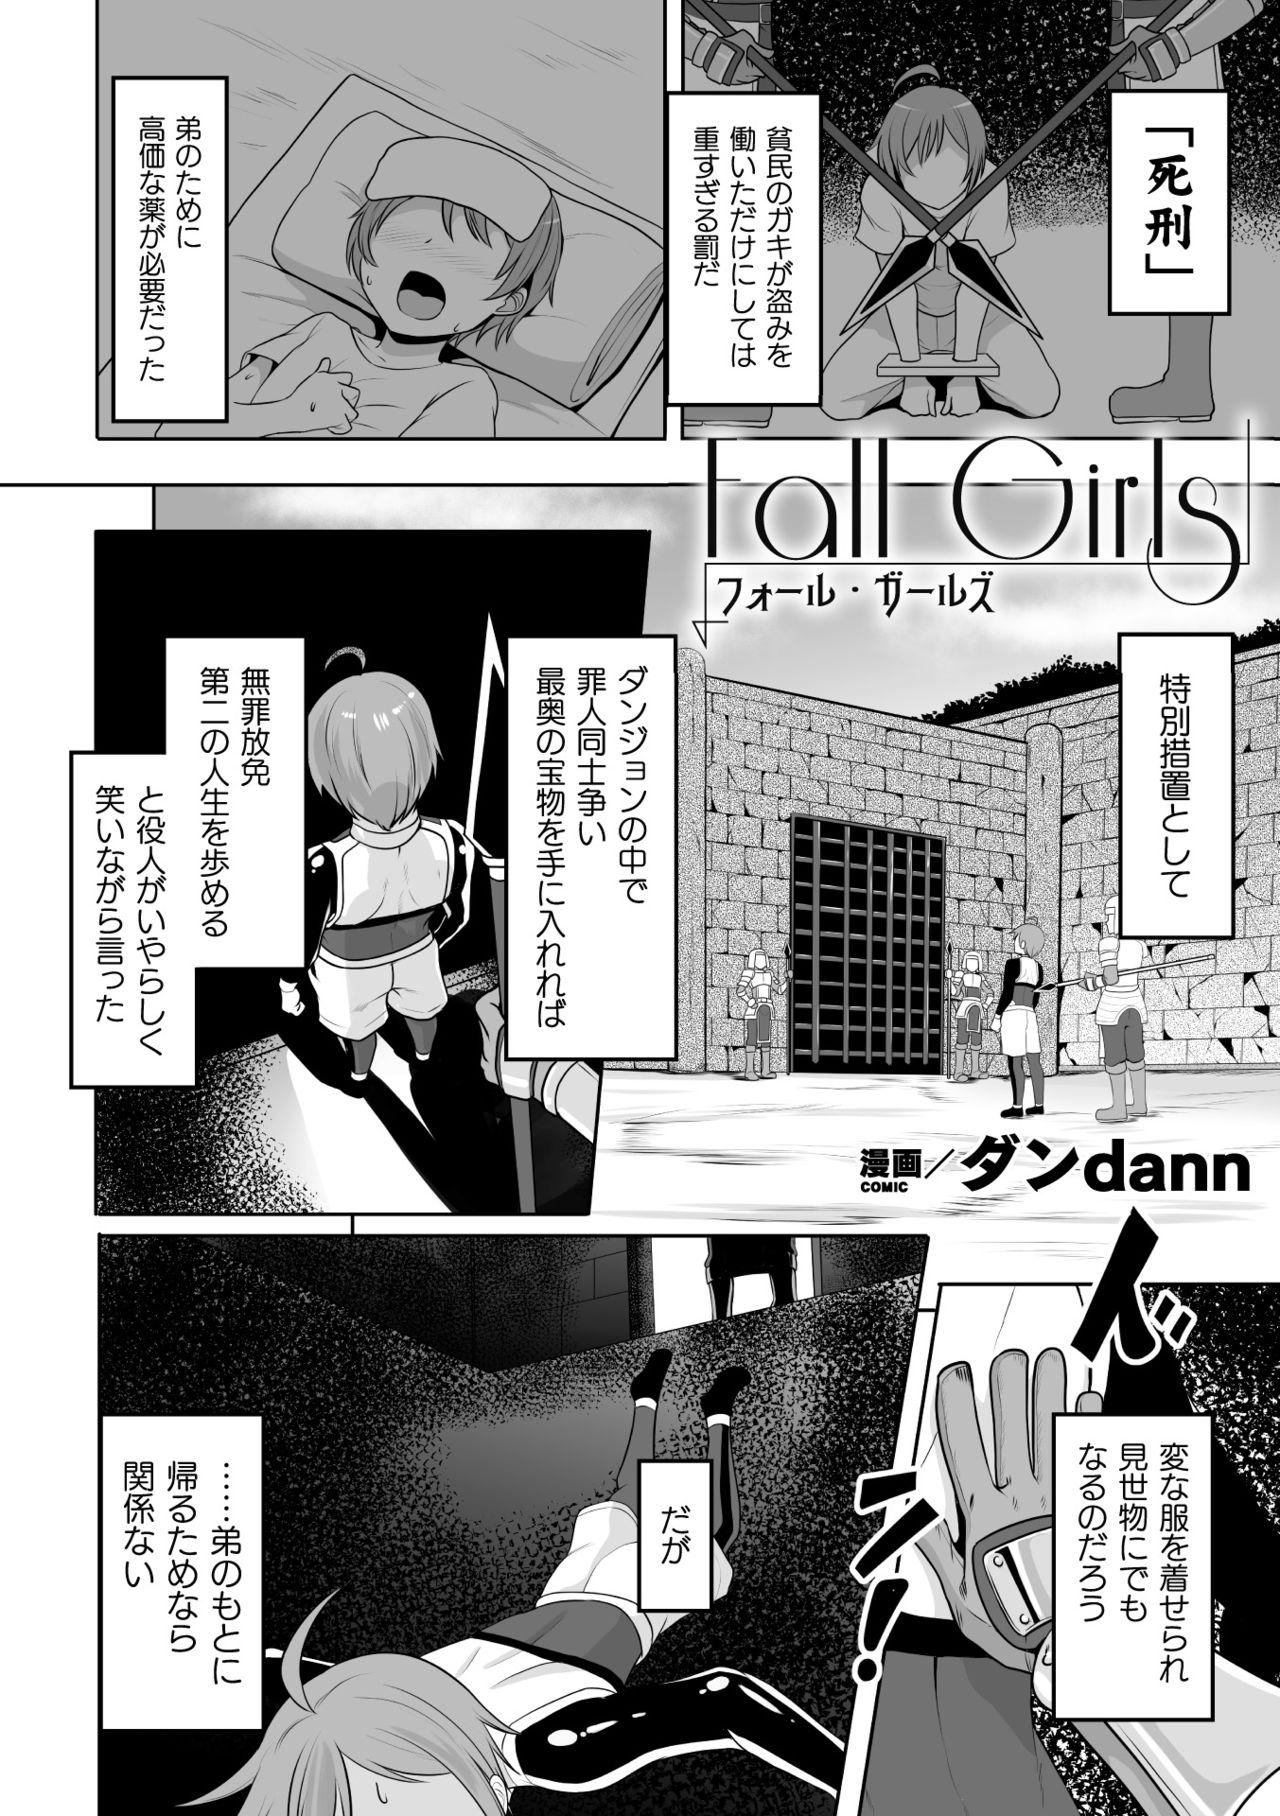 Deutsche 2D Comic Magazine Mesu Ochi! TS Ero Trap Dungeon Vol. 2 Reality Porn - Page 4